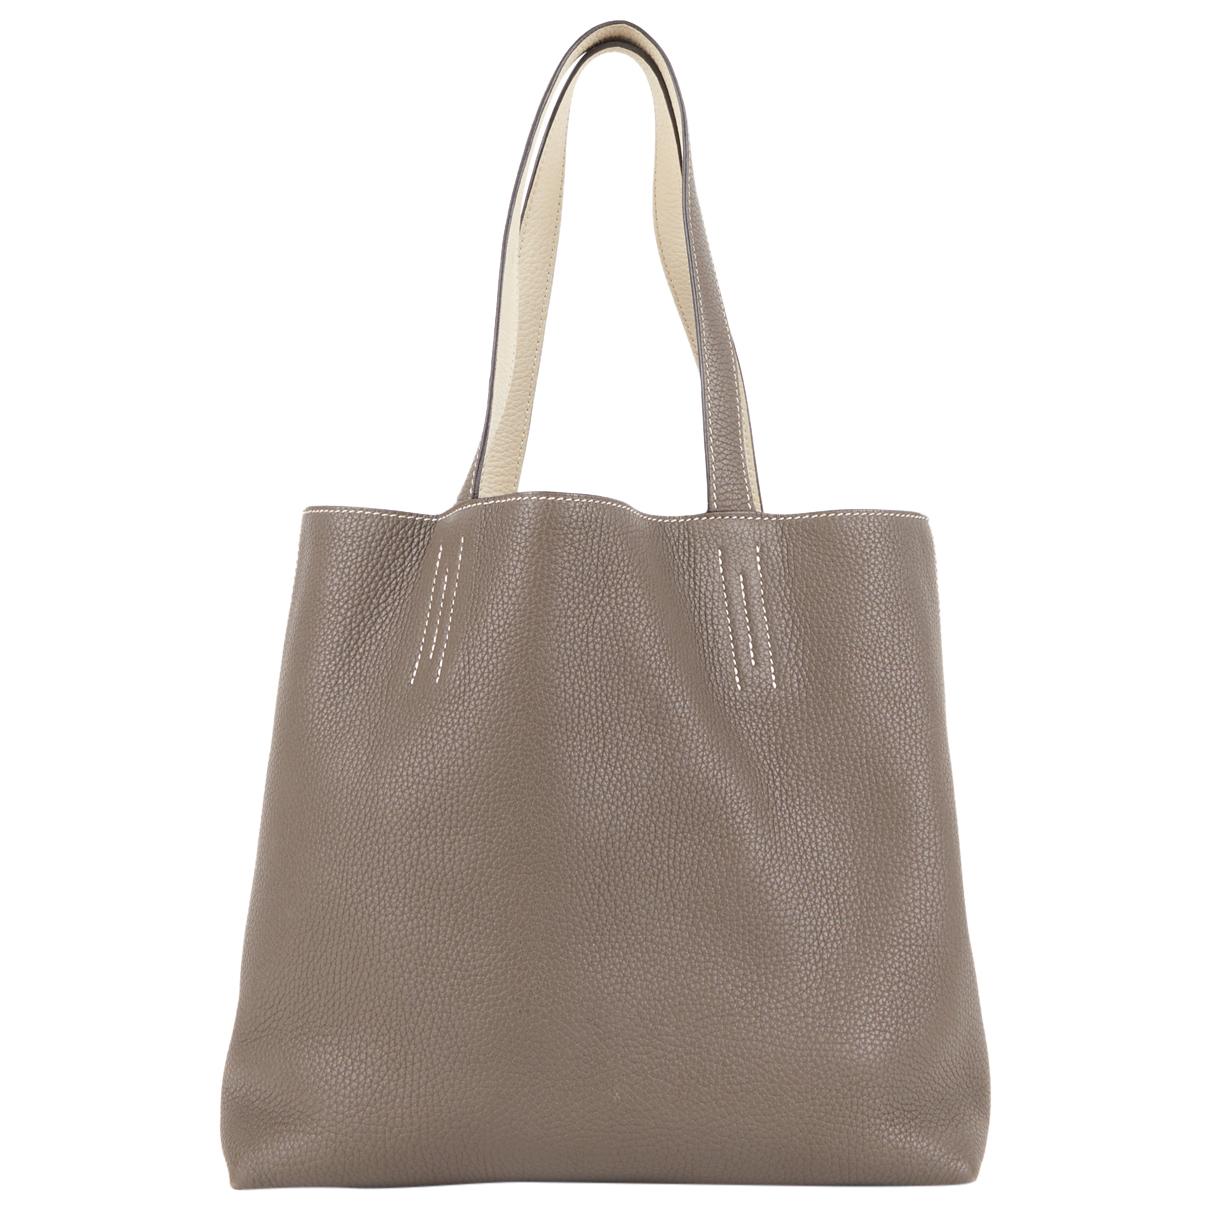 Double sens Hermès Handbags for Women - Vestiaire Collective